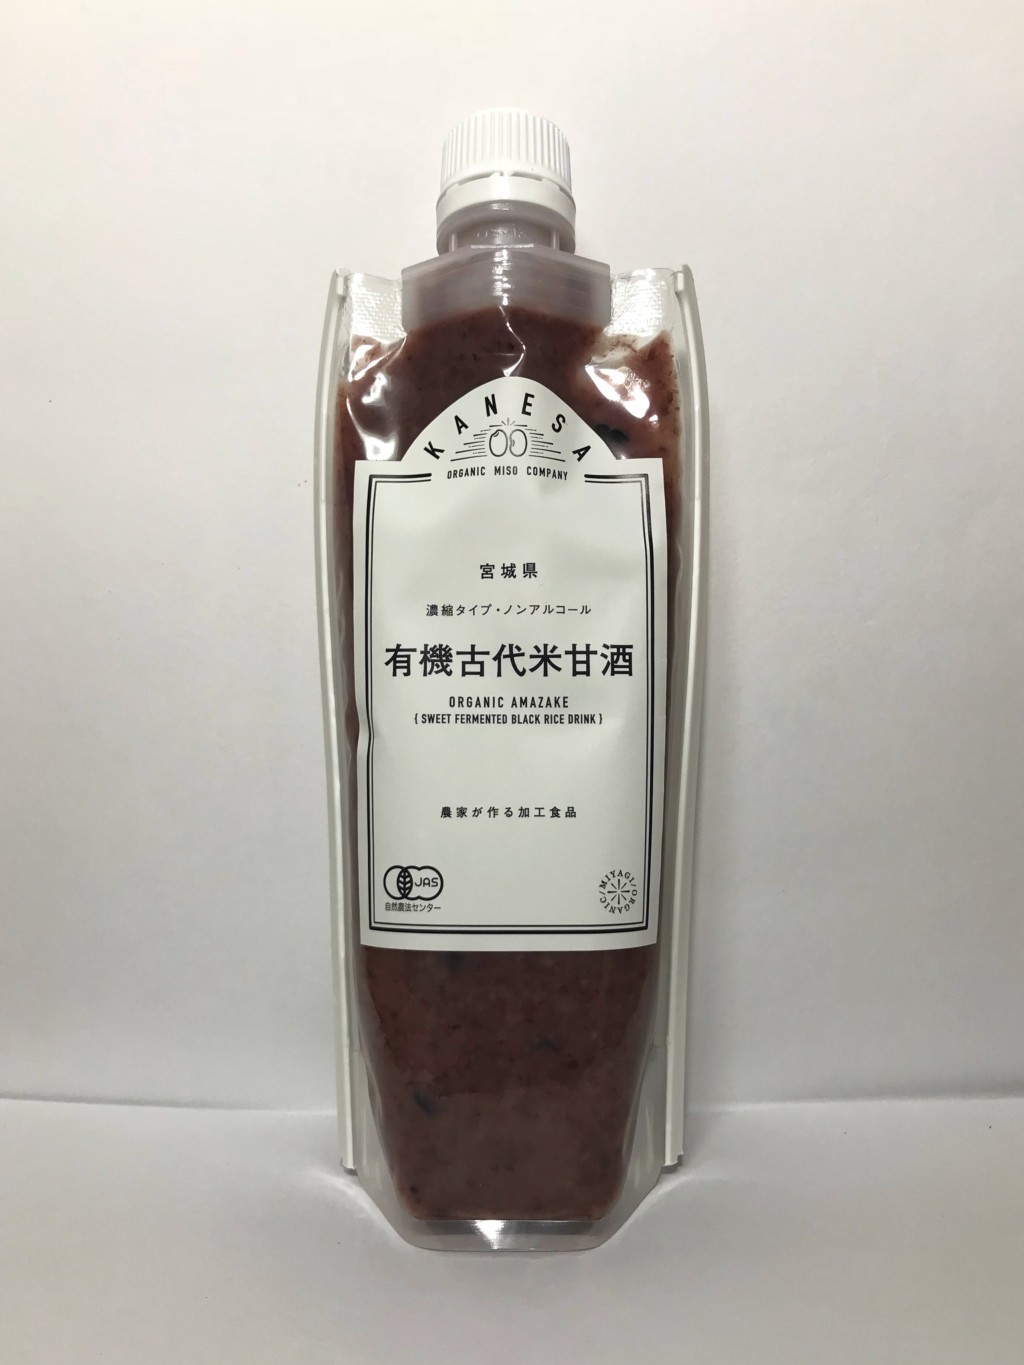 カネサオーガニック味噌工房の米麹甘酒『有機古代米甘酒』